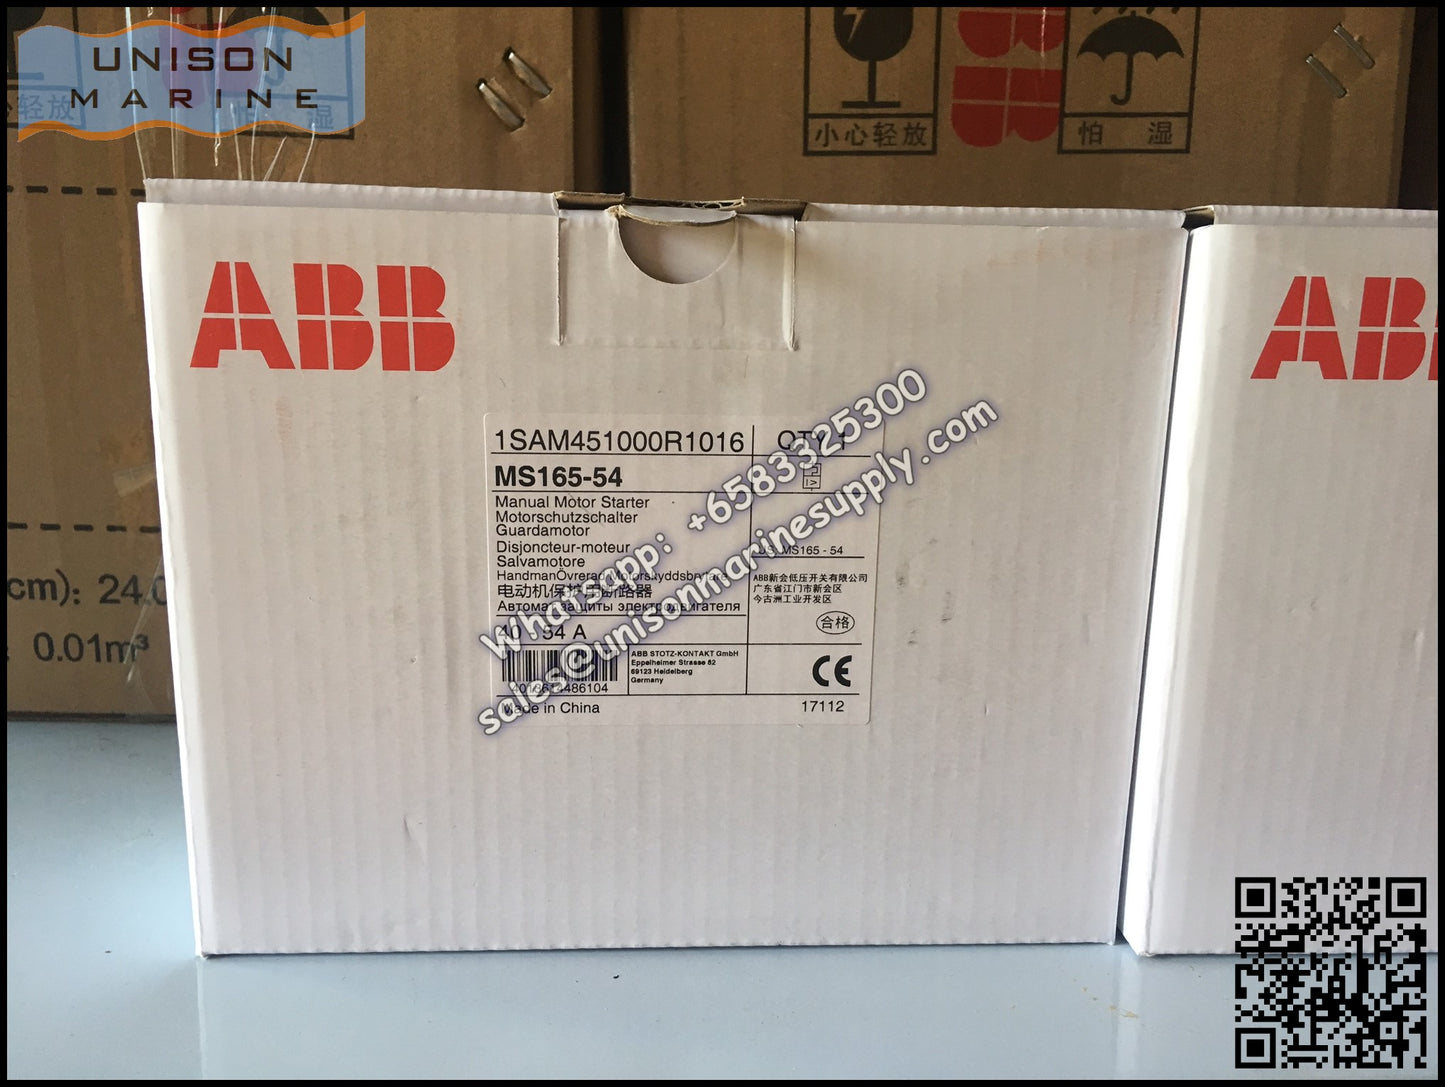 ABB Manual Motor Starter MS165-54 1SAM451000R1016